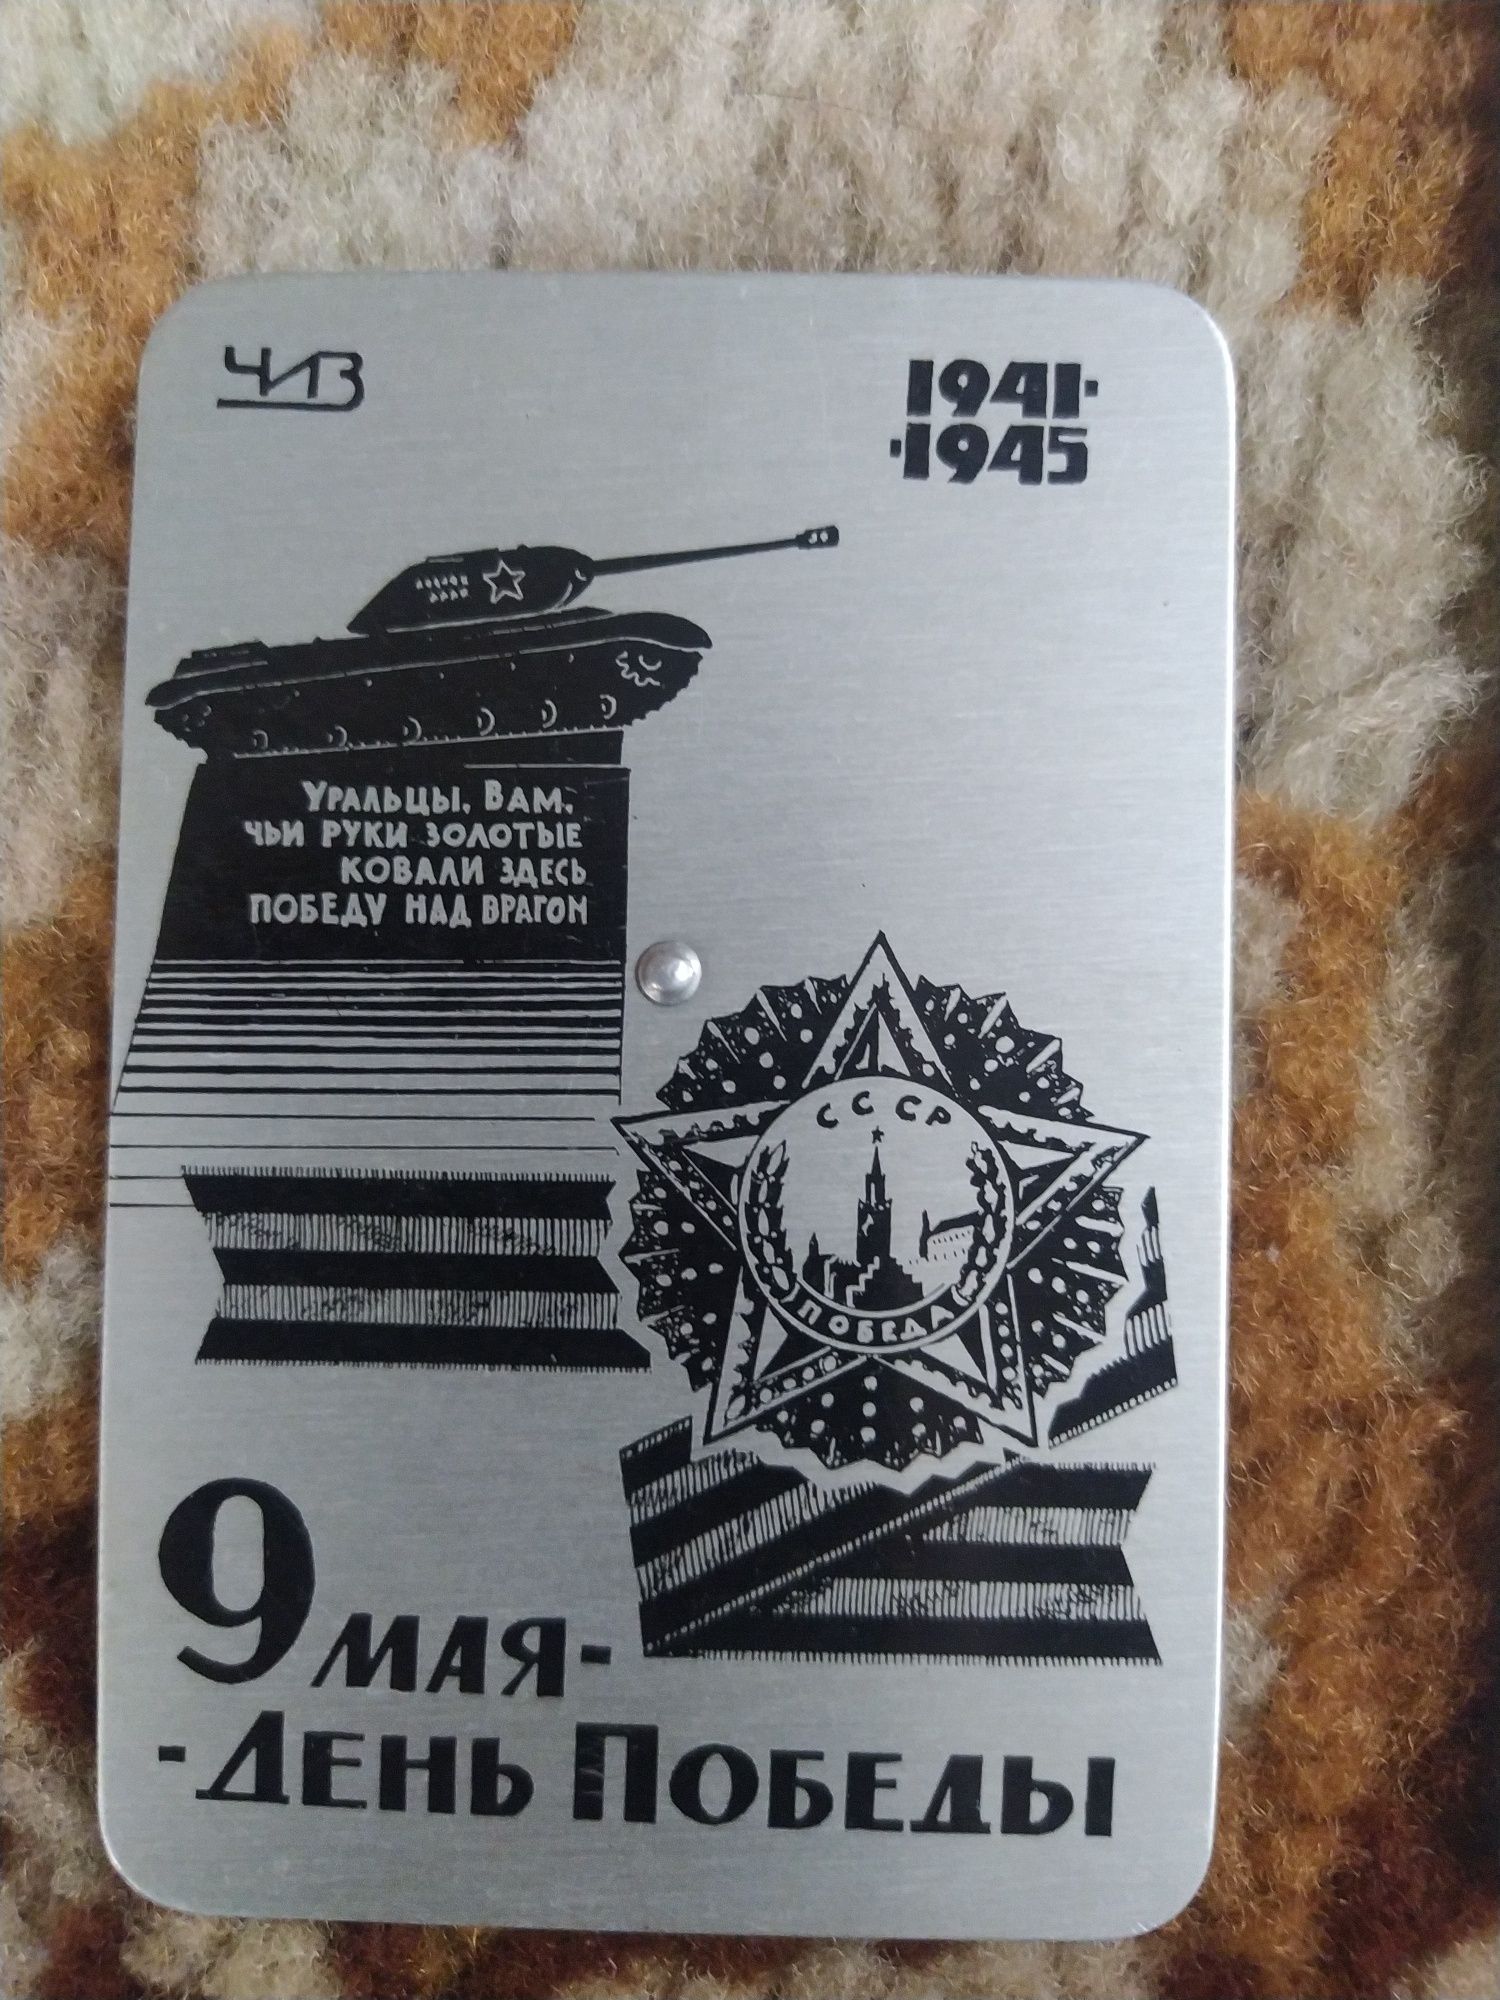 Календарь 1967 р. в колекцію 1974-1995.